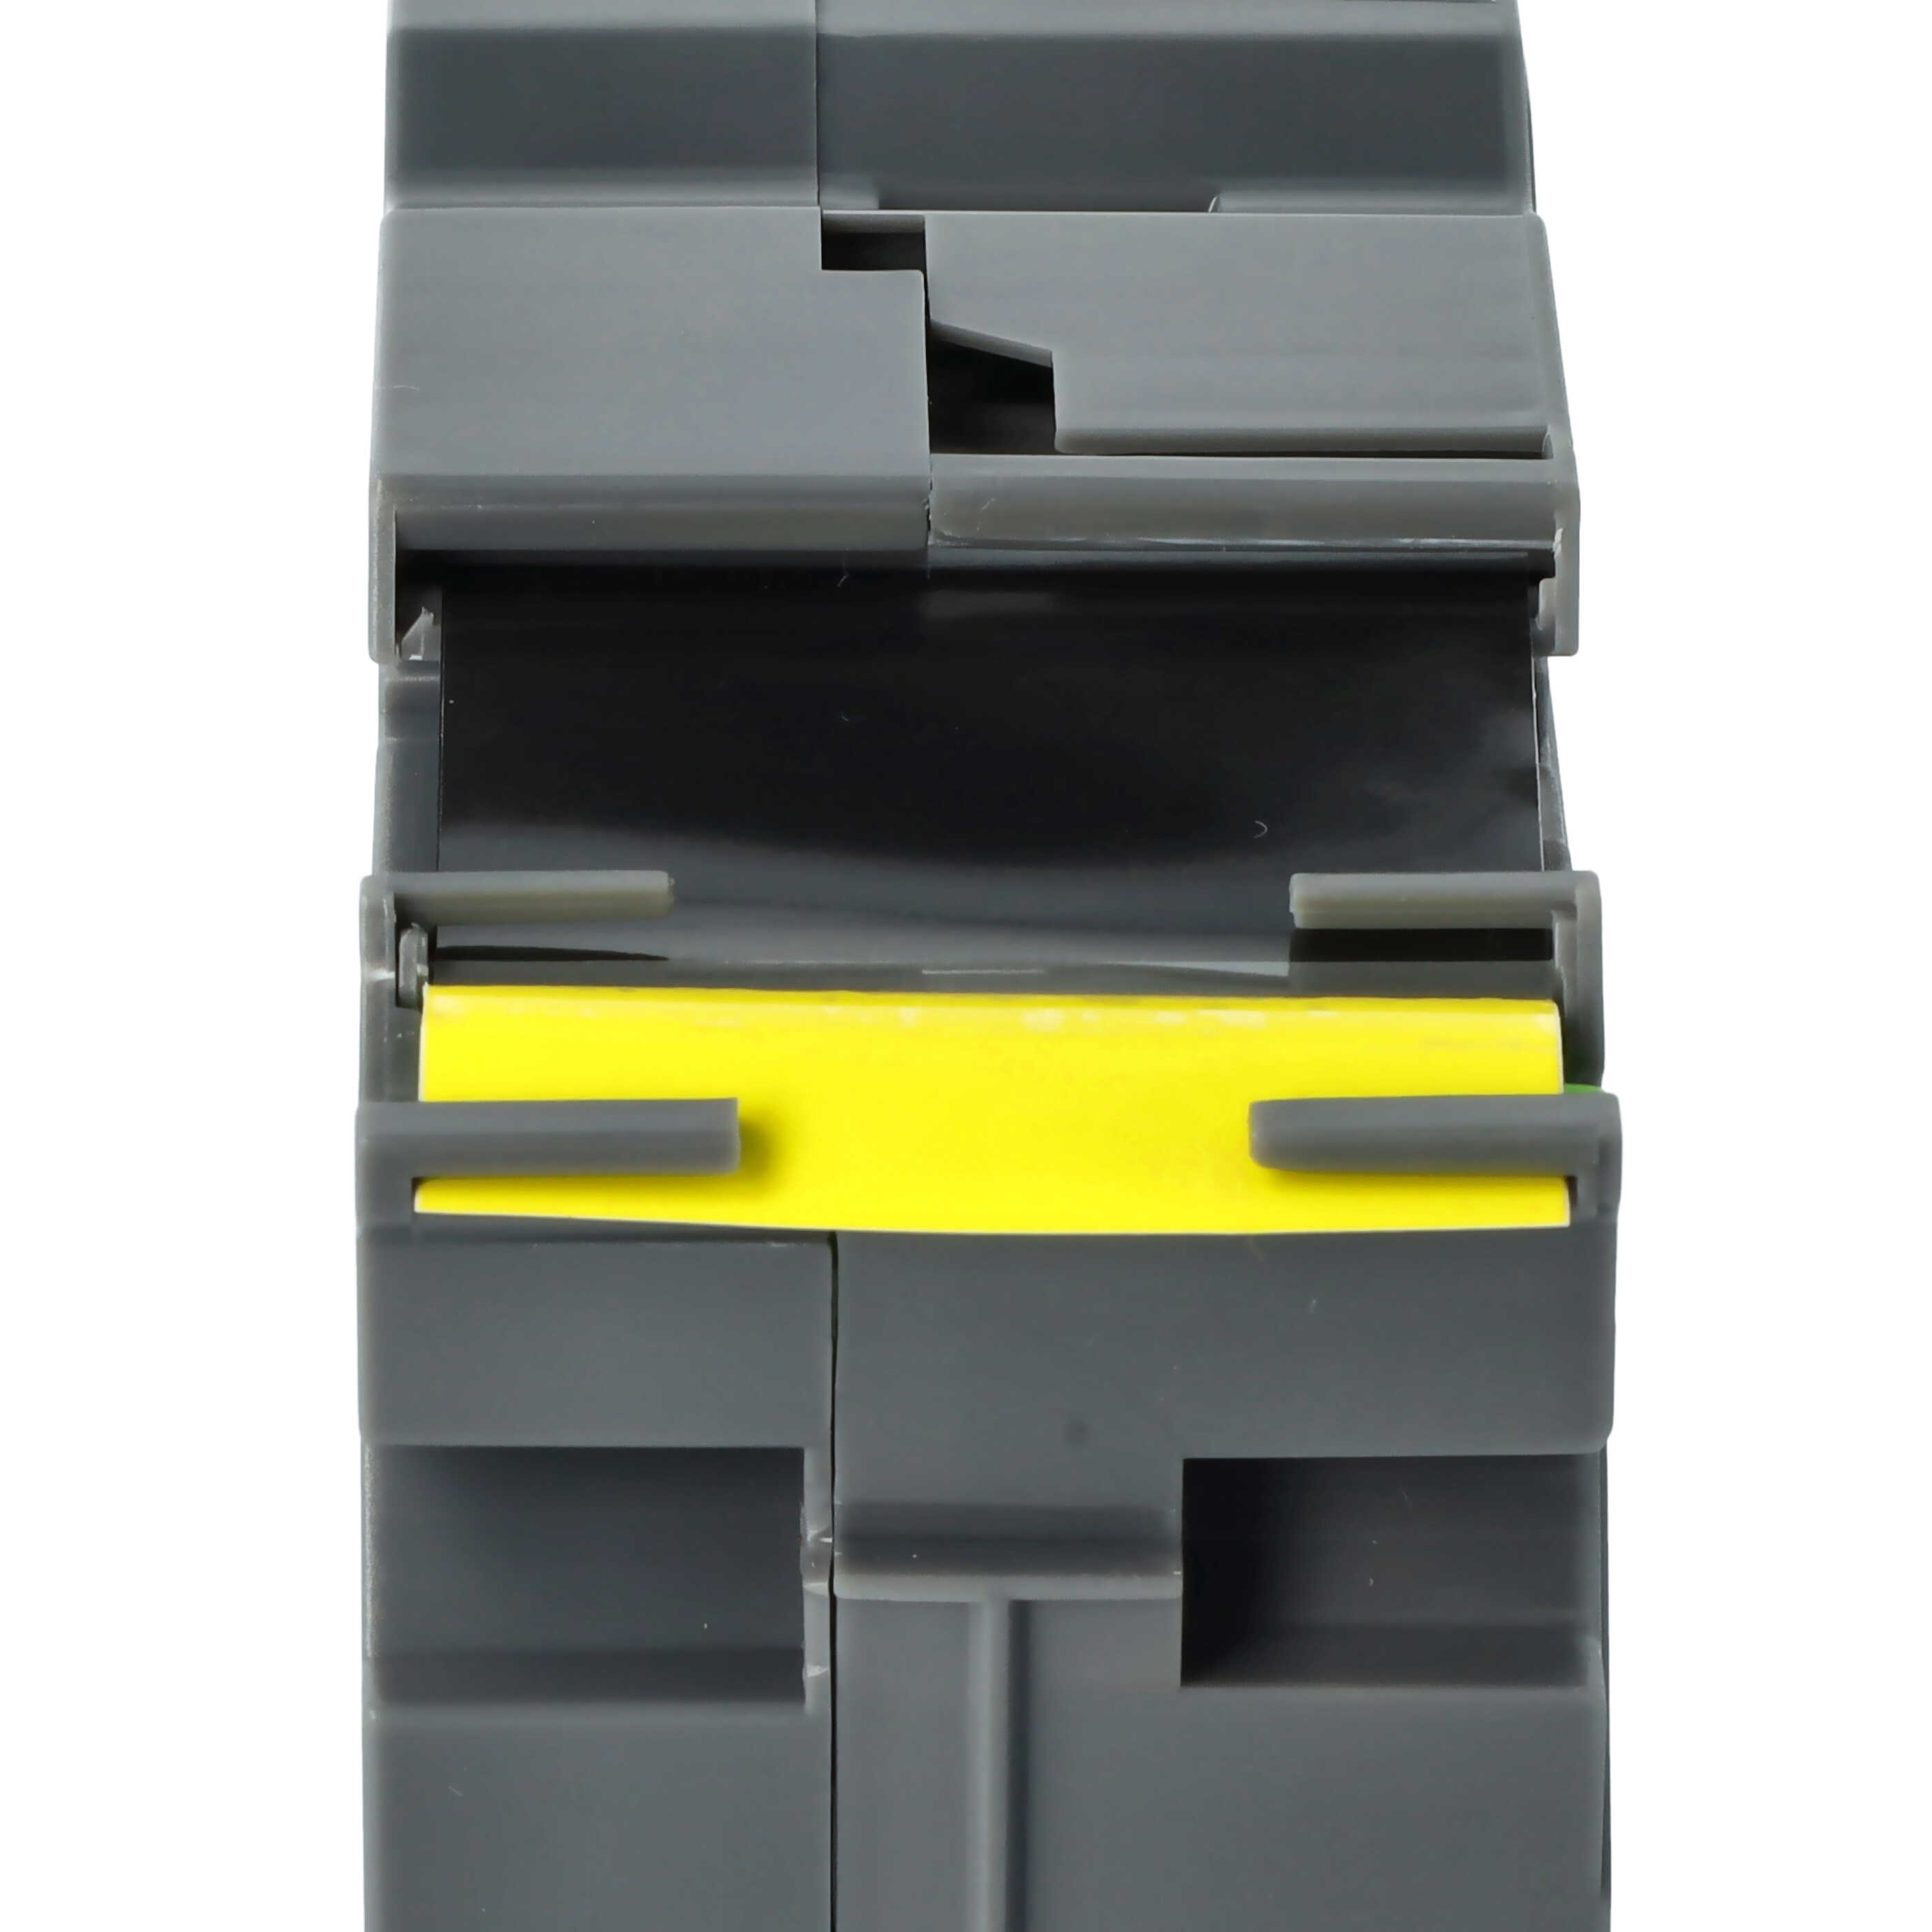 Taśma do etykiet zam. Brother TZE-FX661, TZ-FX661 - 36mm, napis czarny / taśma żółta, elastyczna